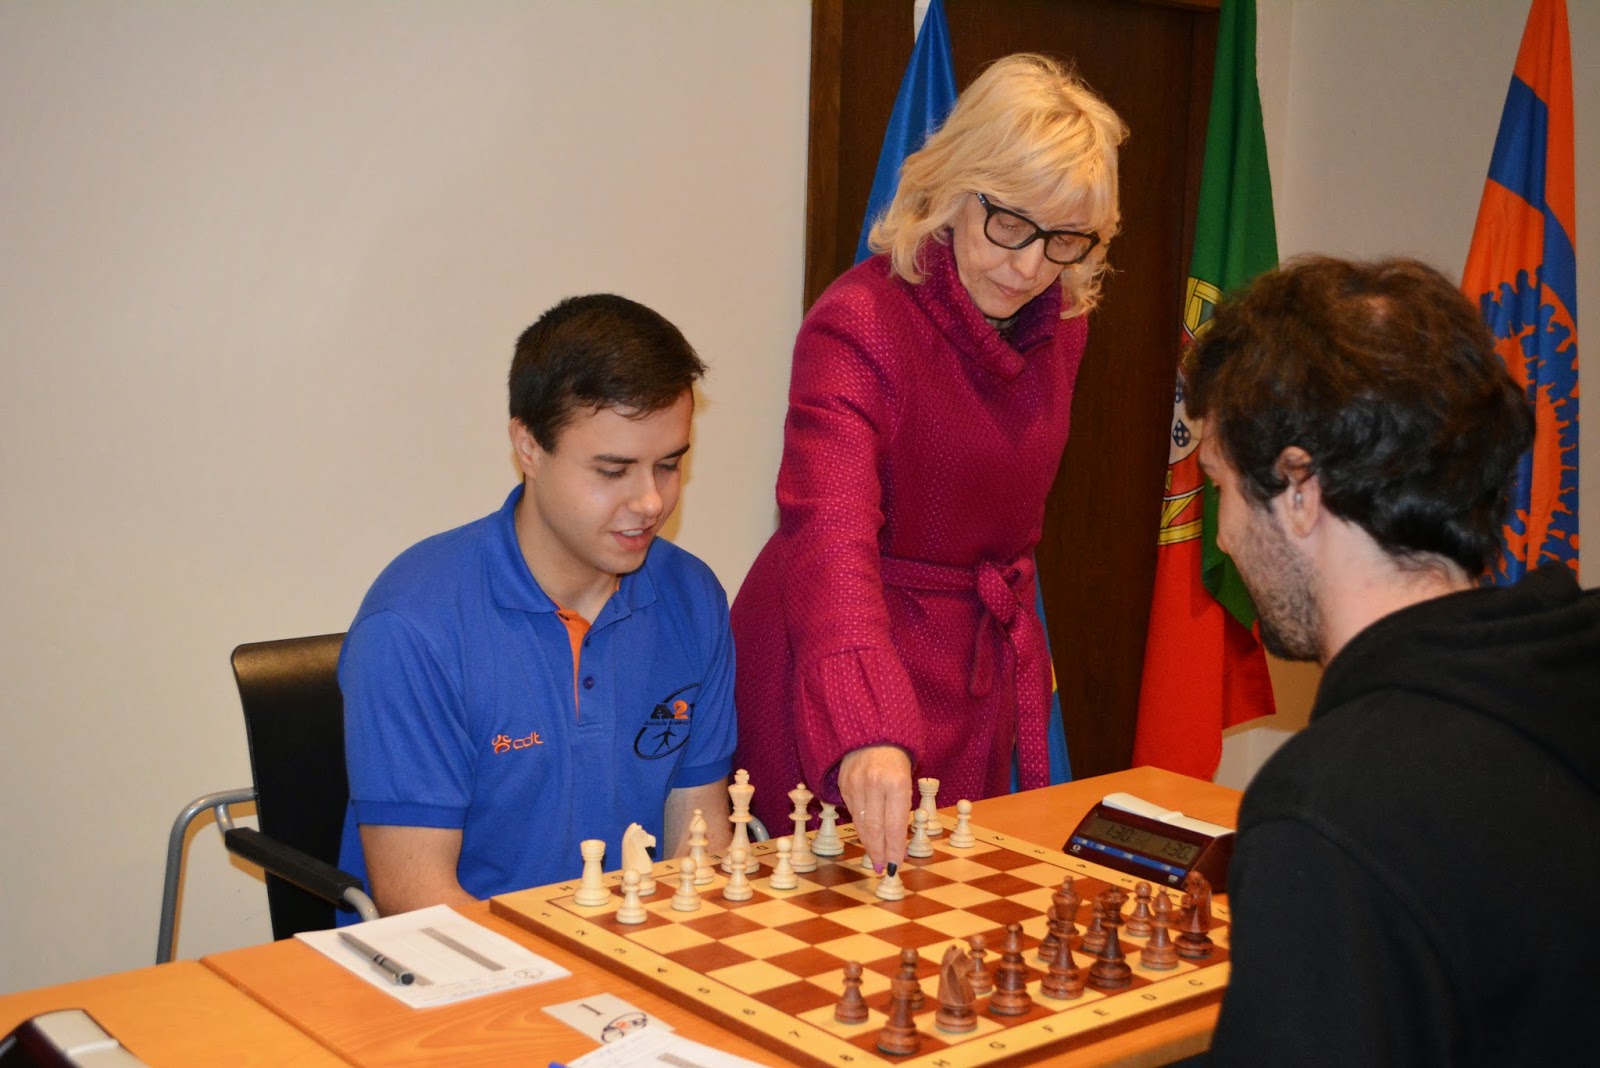 xadrez64 - Portugal em 64 quadrados: notícias de xadrez